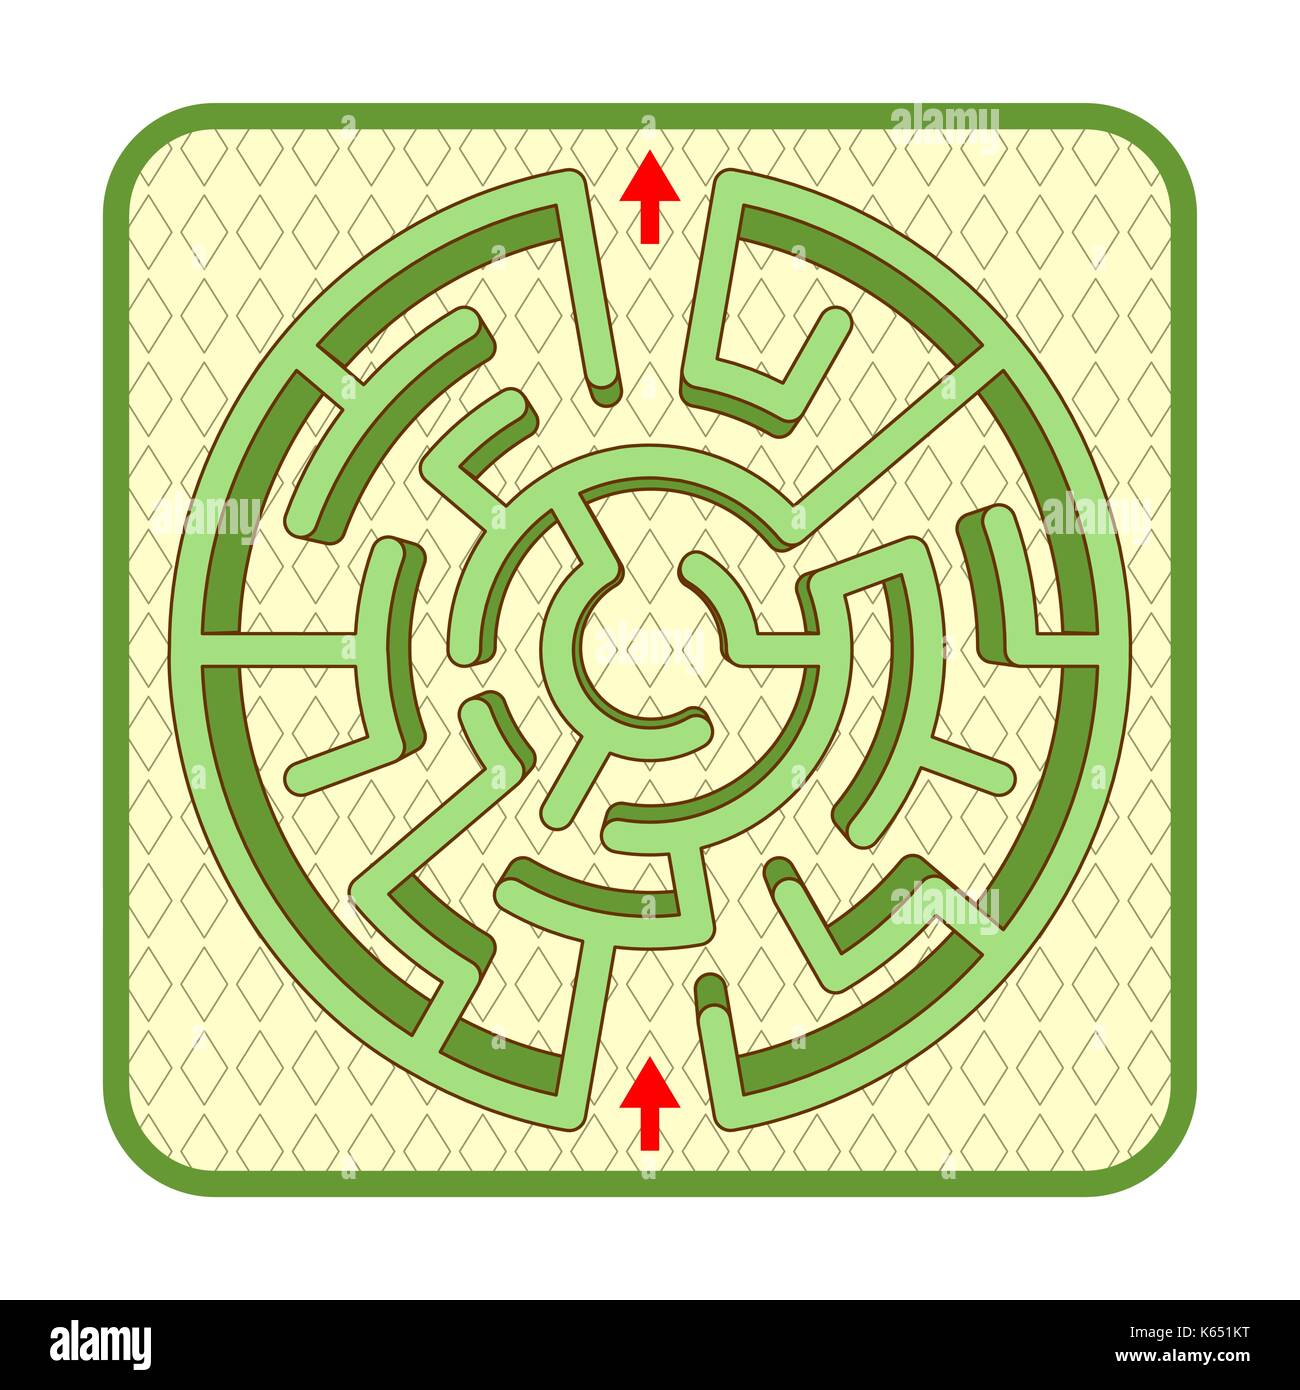 Résumé trois dimensions en forme de cercle jeu de labyrinthe de couverture modèle, vue de dessus, prêt à l'emploi. ou ajouter le texte de la légende et de personnages de dessins animés, si nécessaire. Illustration de Vecteur